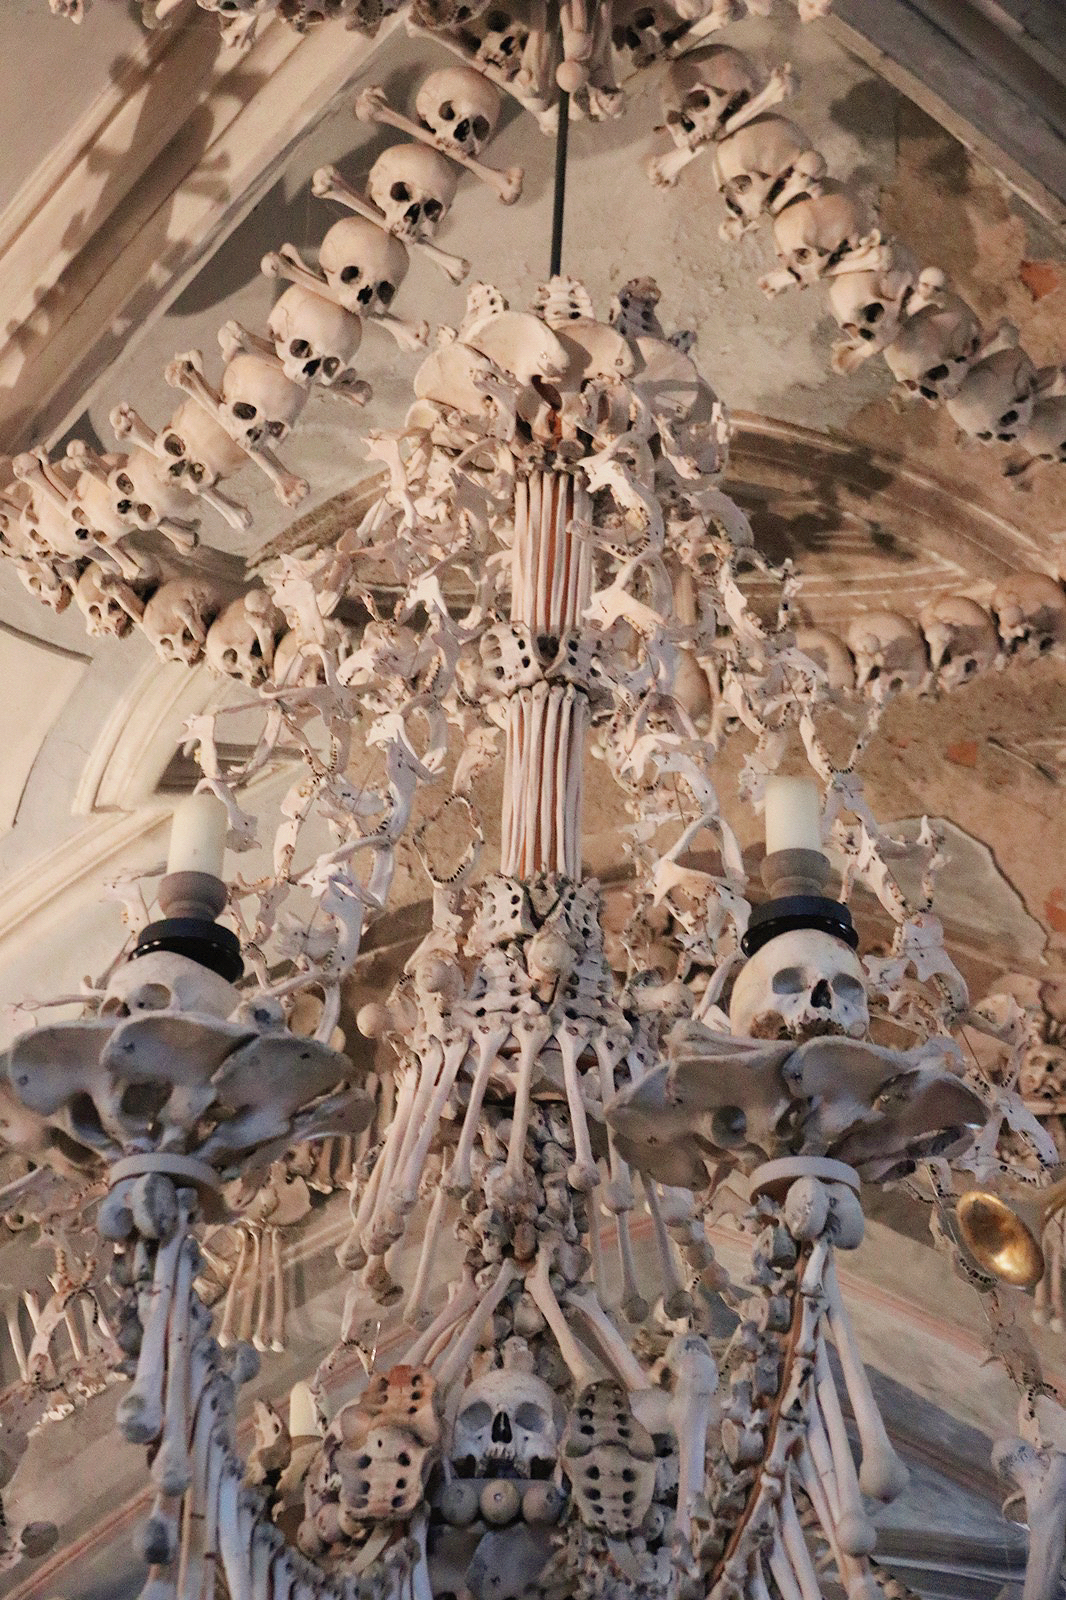 漫游捷克 | 布拉格周边 | 诡异的「人骨教堂」